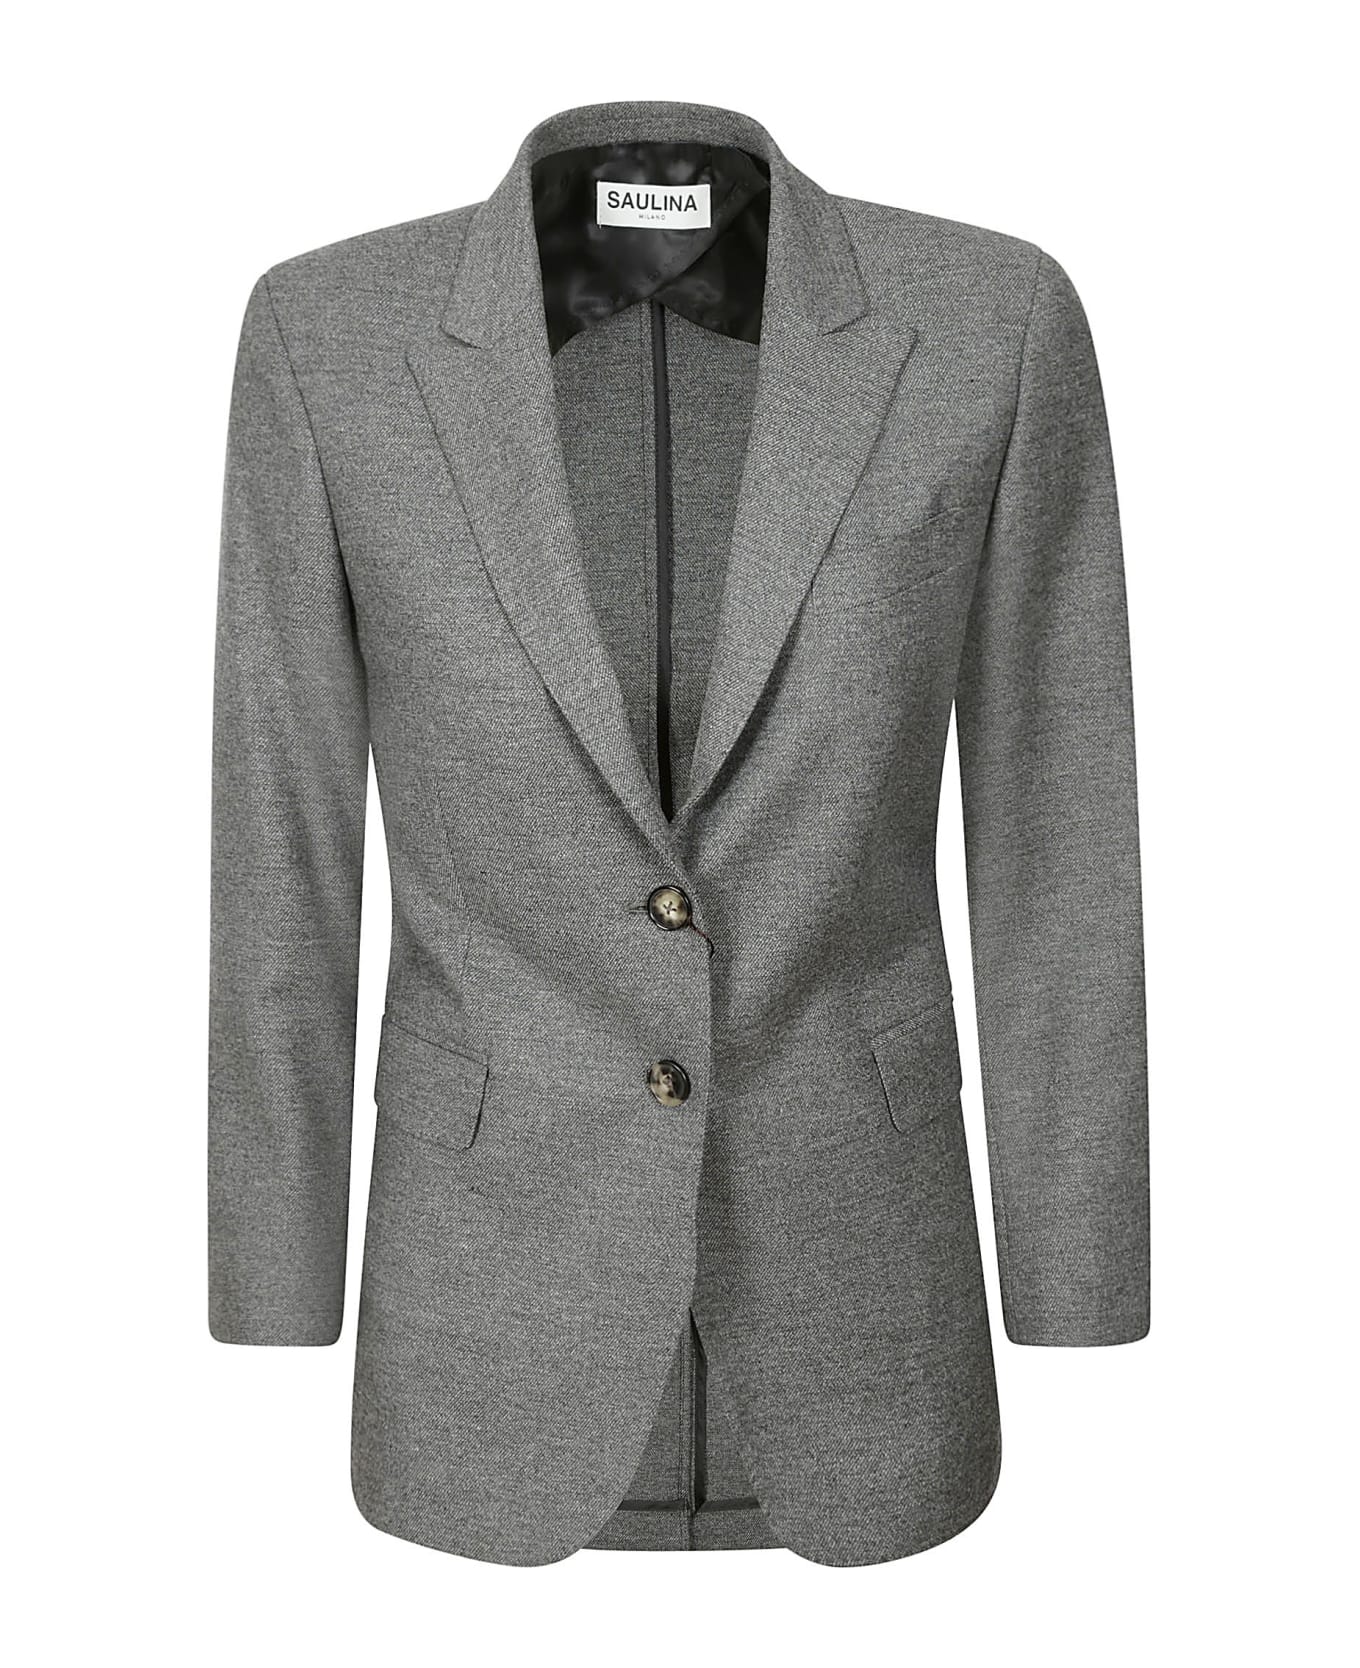 Saulina Milano Jacket - Grey